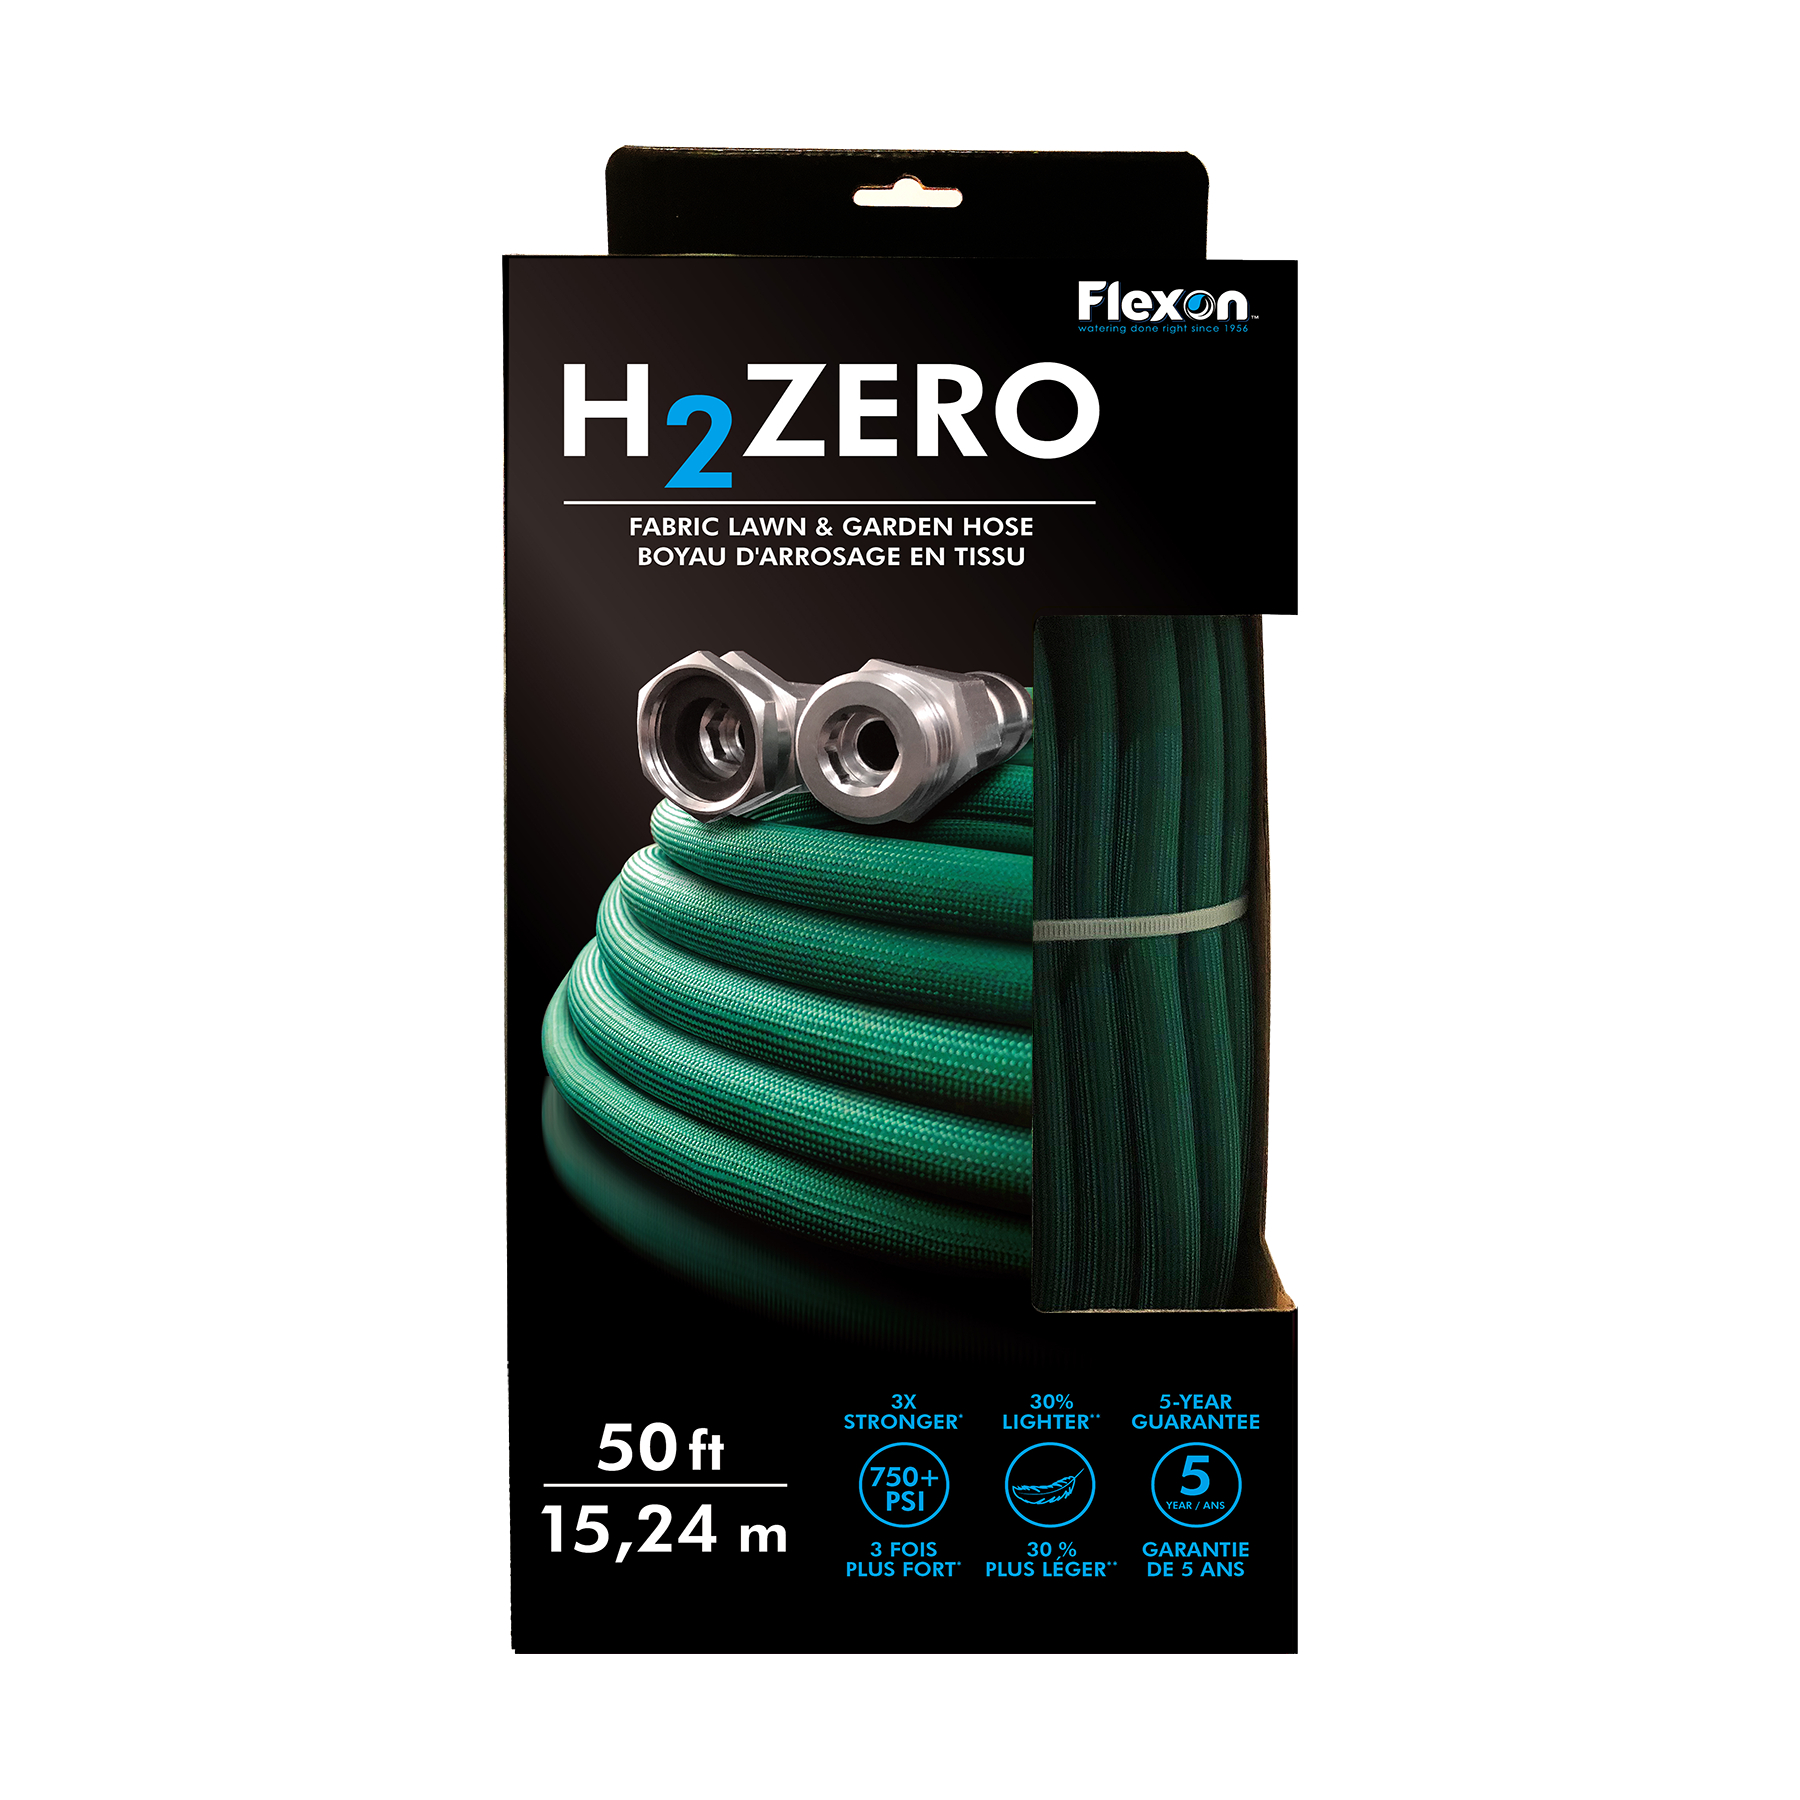 H2ZERO - Flexon Fabric Lawn & Garden Hose